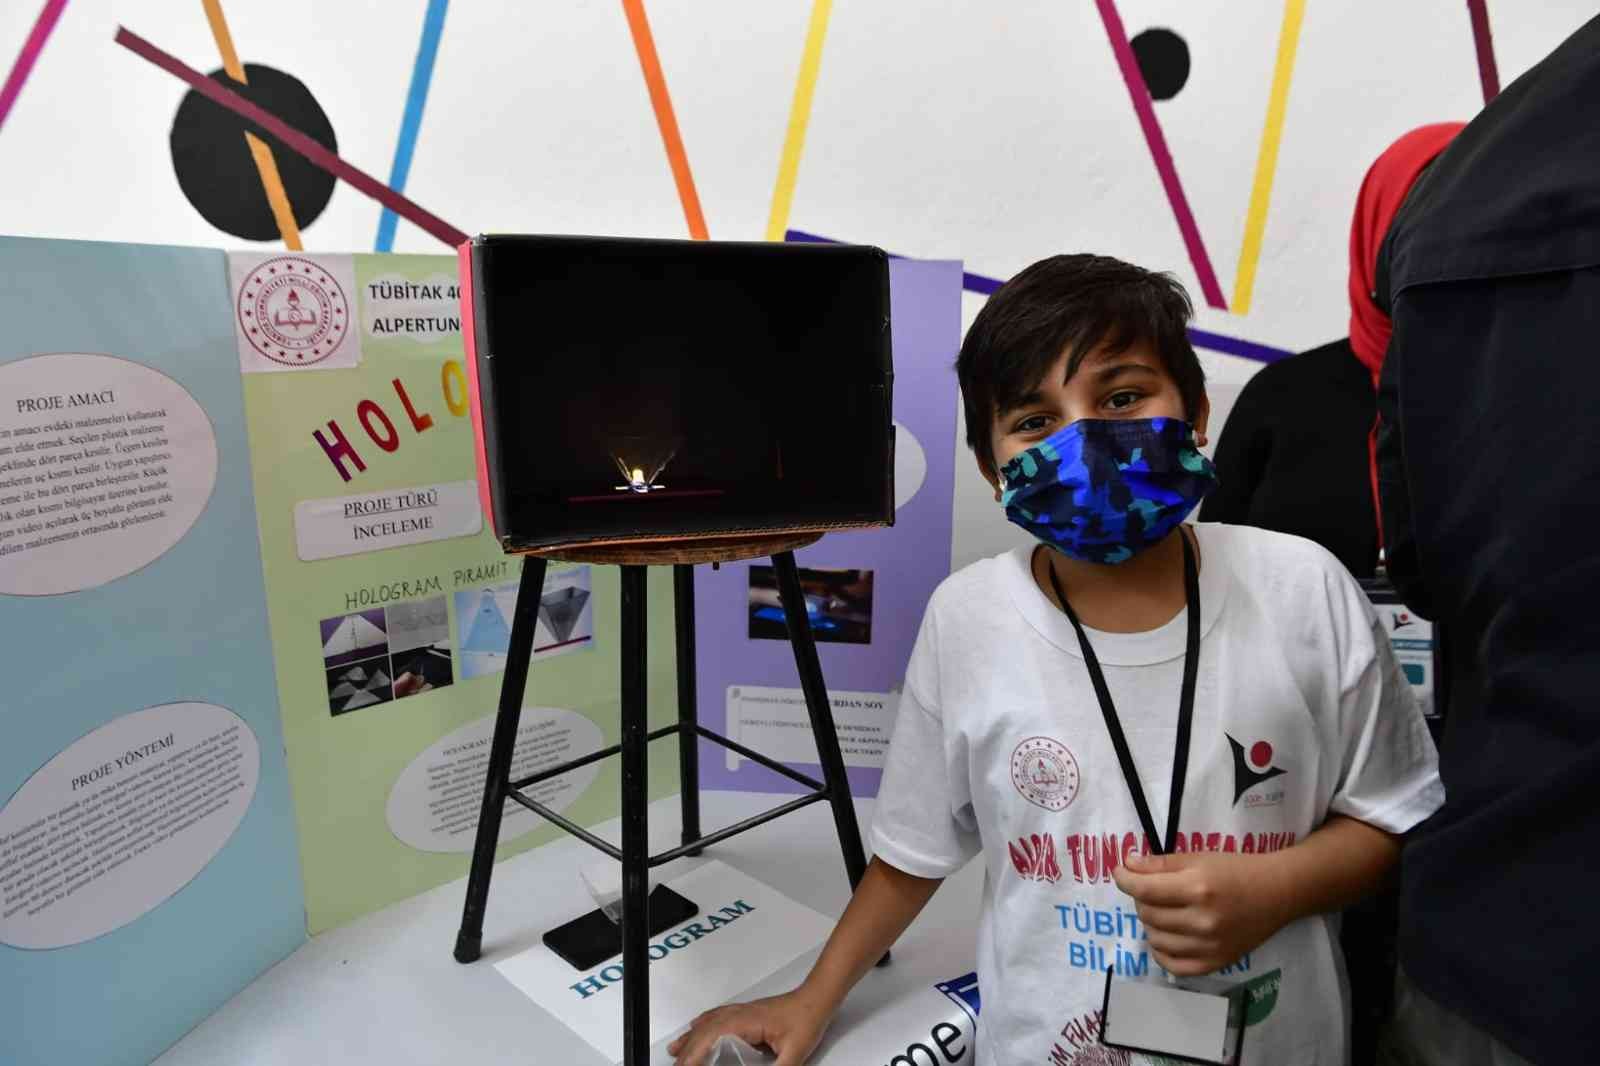 Mamak’ta teknoloji meraklısı gençler eserlerini sergiledi #ankara